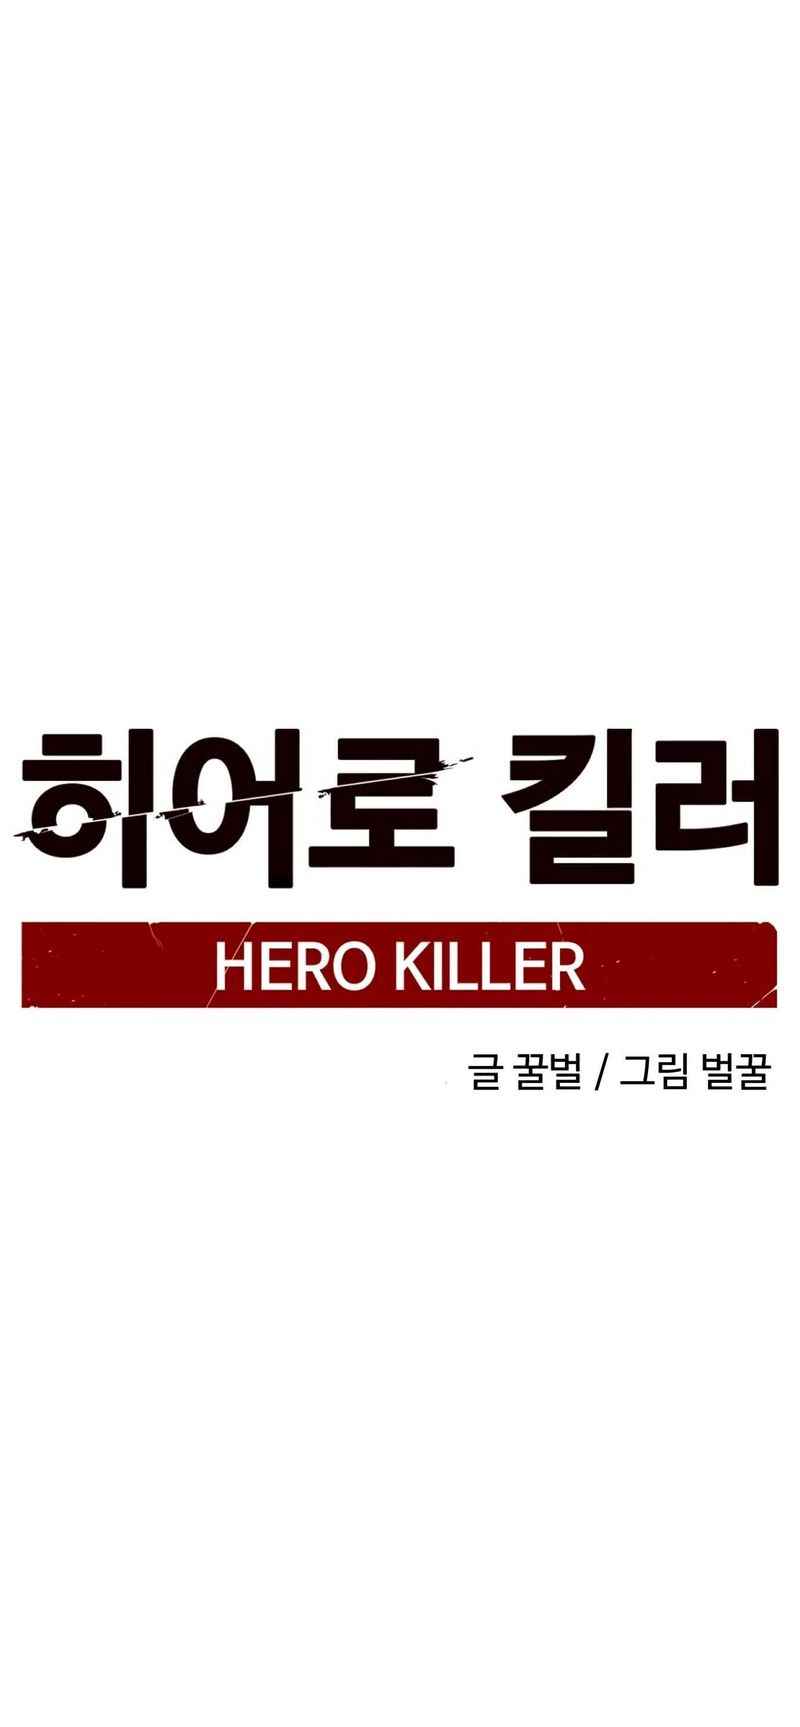 Hero Killer 14 39